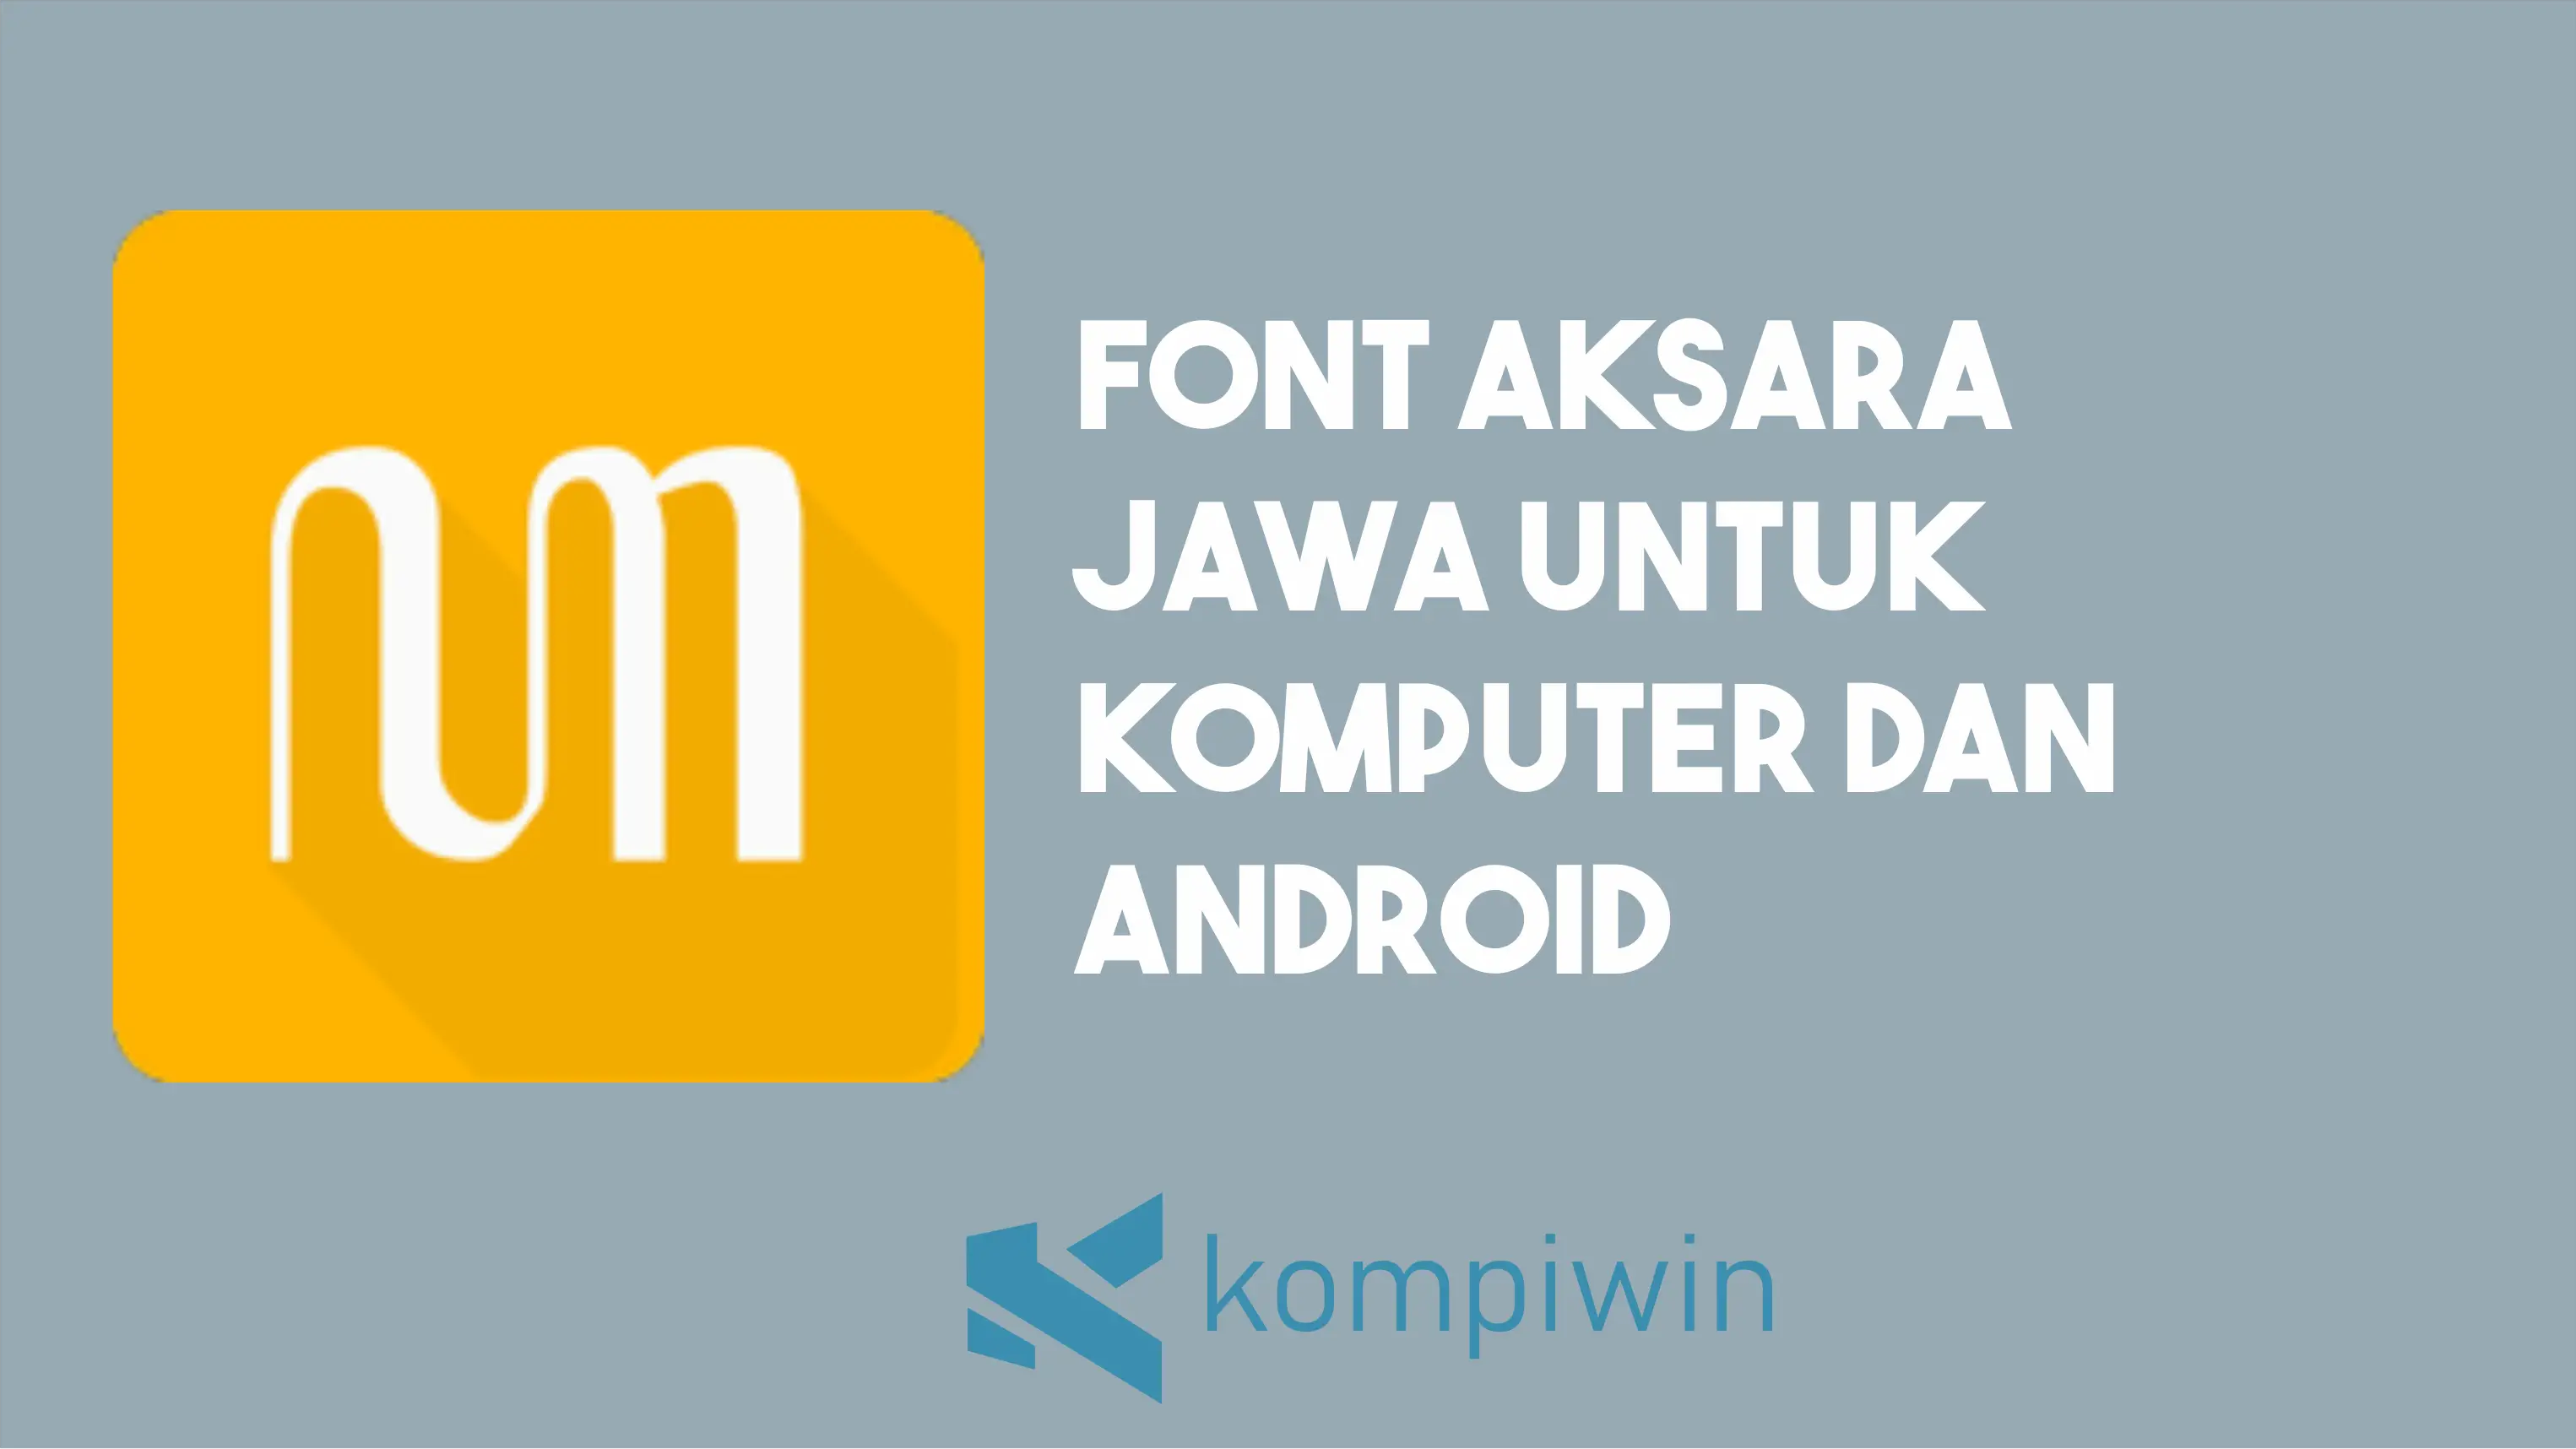 Font Aksara Jawa Untuk Komputer Dan Android